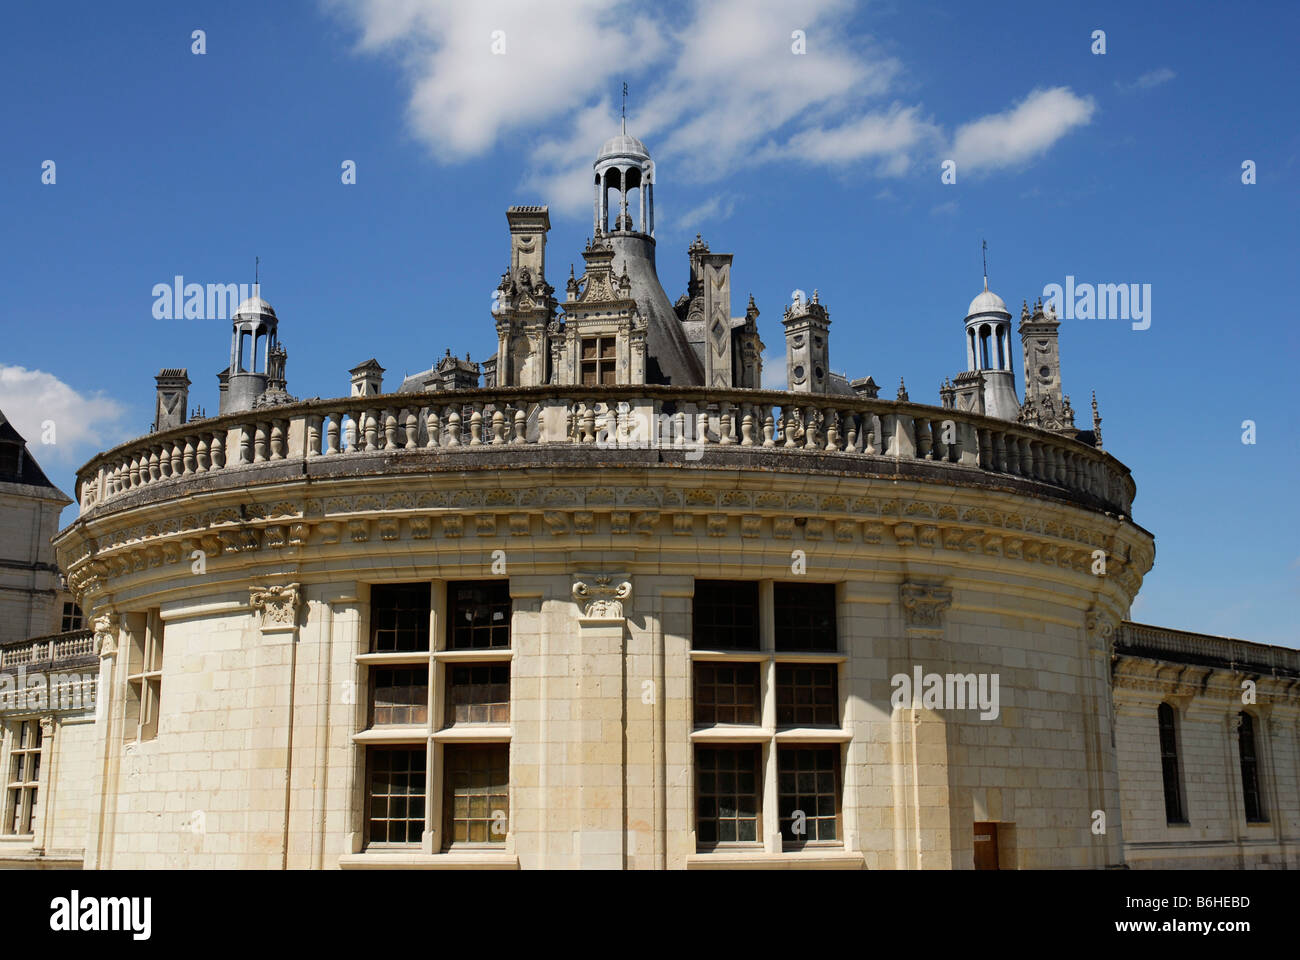 Chateau Royal de Chambord French Renaissance, Loire valley Loir et Cher Touraine France World heritage of the UNESCO Stock Photo